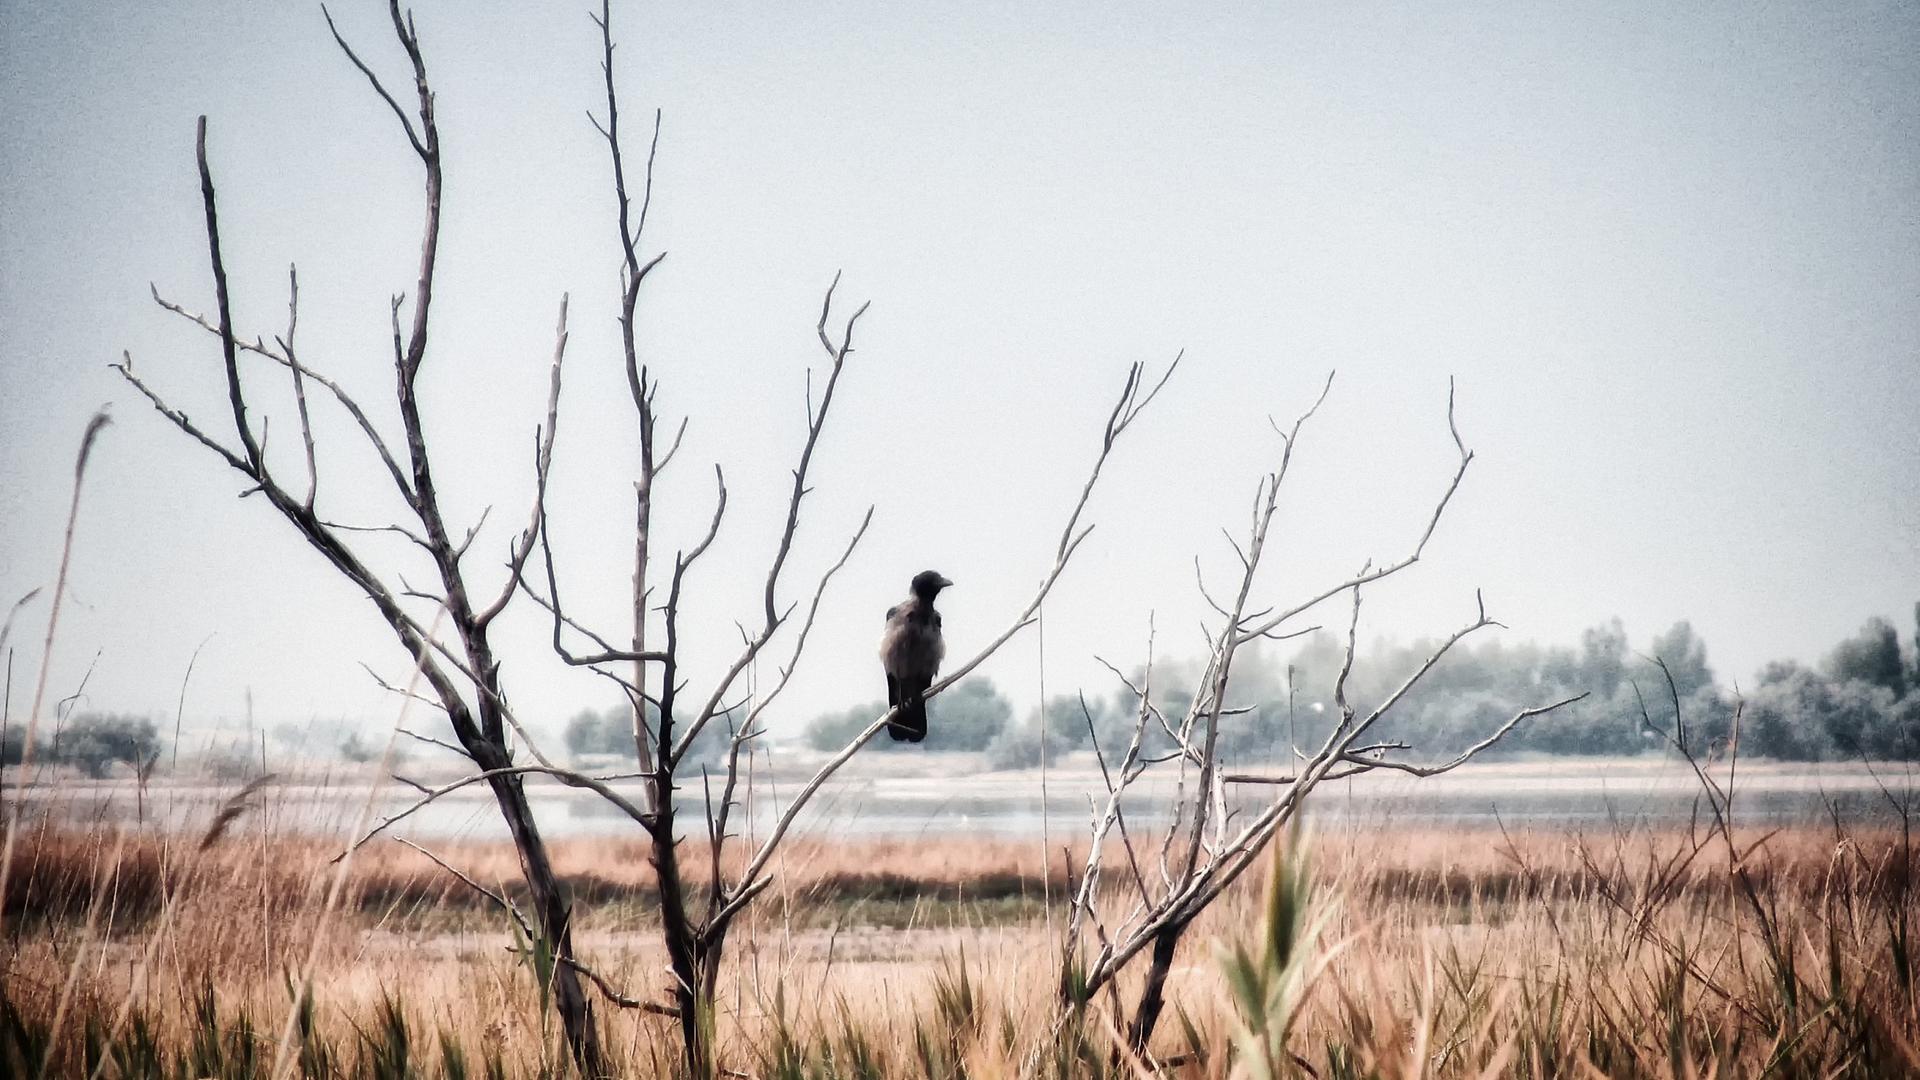 Ein schwarzer Rabe sitzt auf einem toten Zweig und schaut in die Landschaft.